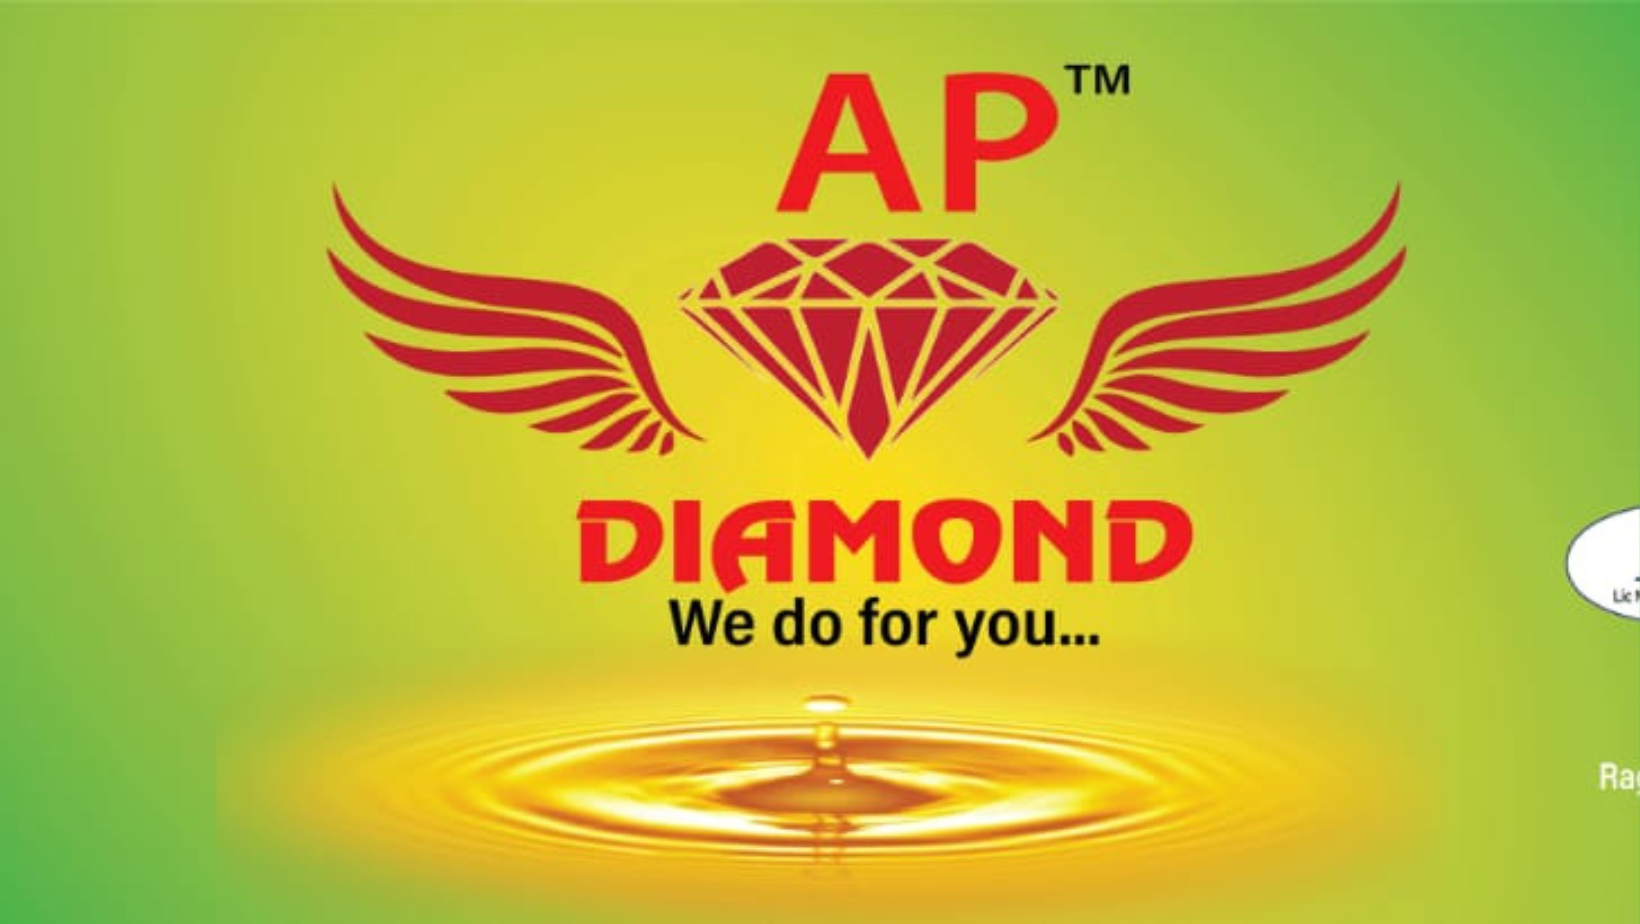 AP DIAMOND